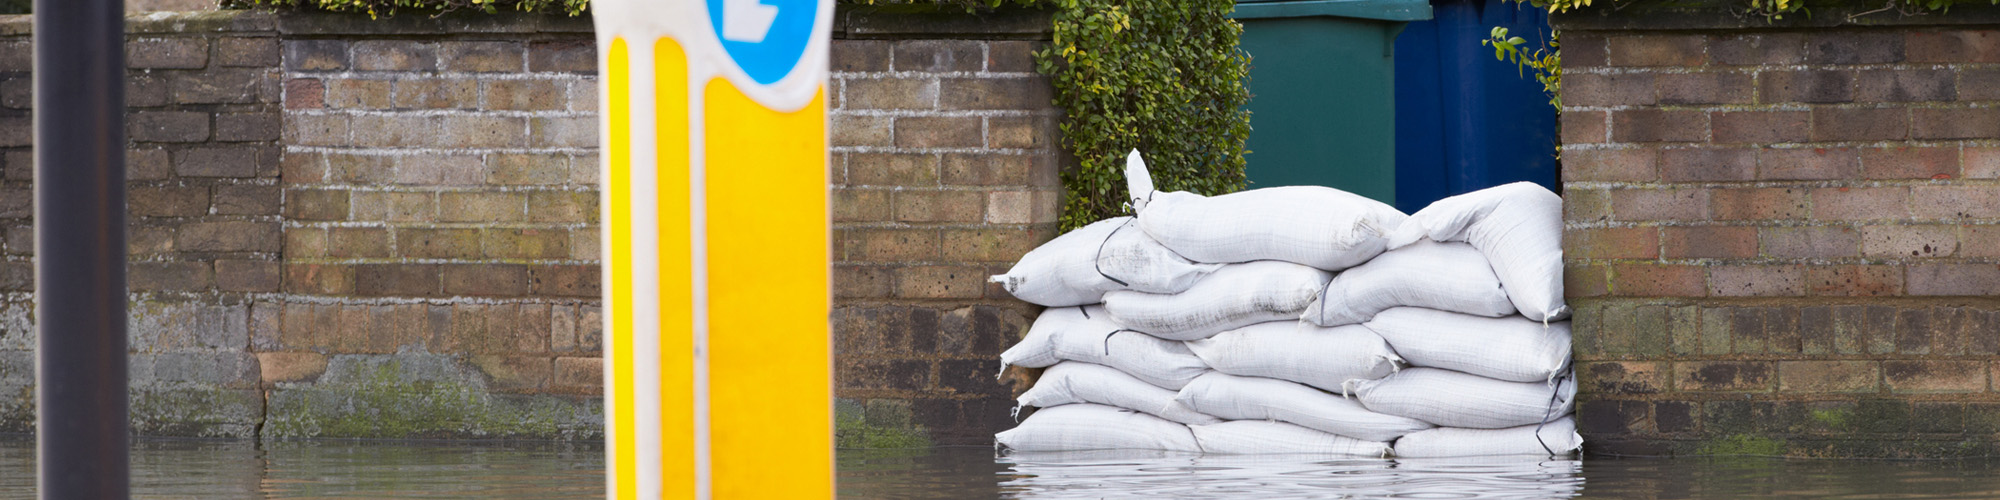 An image of sandbags keeping flood water at bay